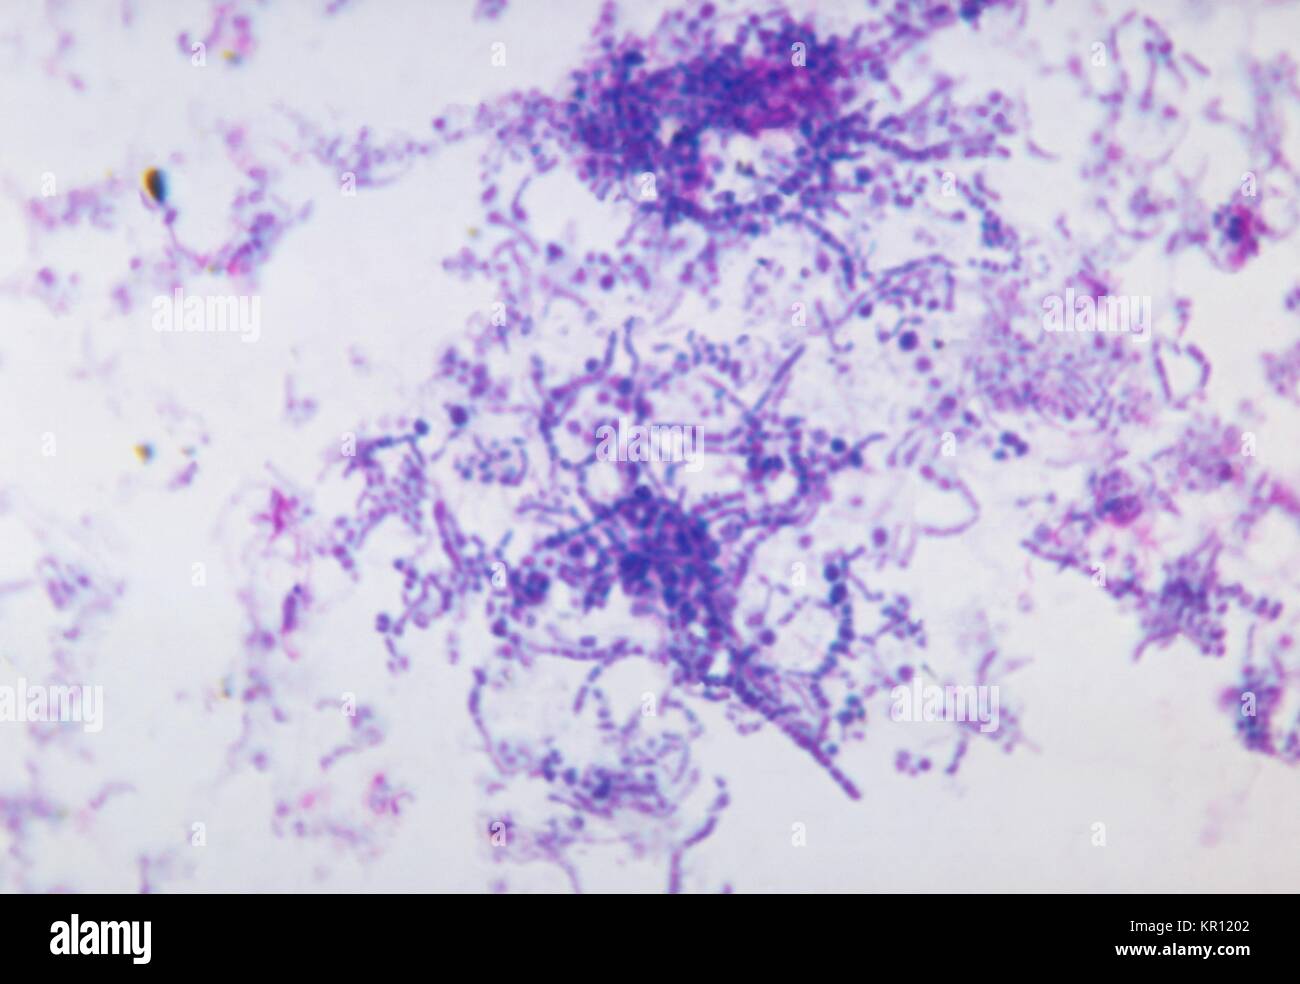 Dies ist ein photomicrograph von Dermatophilus congolensis Bakterien mit einem giemsa Fleck, 1972. Dermatophilus congolensis ist ein gram-positives, pleomorphic, fakultativ anaerobe Bakterium durch enge geprägt, verzweigten Filamenten mit Quer-, Längs- septierung und parallele Reihen von coccoid Zellen bekannt als zoosporen. Bild mit freundlicher Genehmigung von CDC/Dr. William Kaplan. Stockfoto